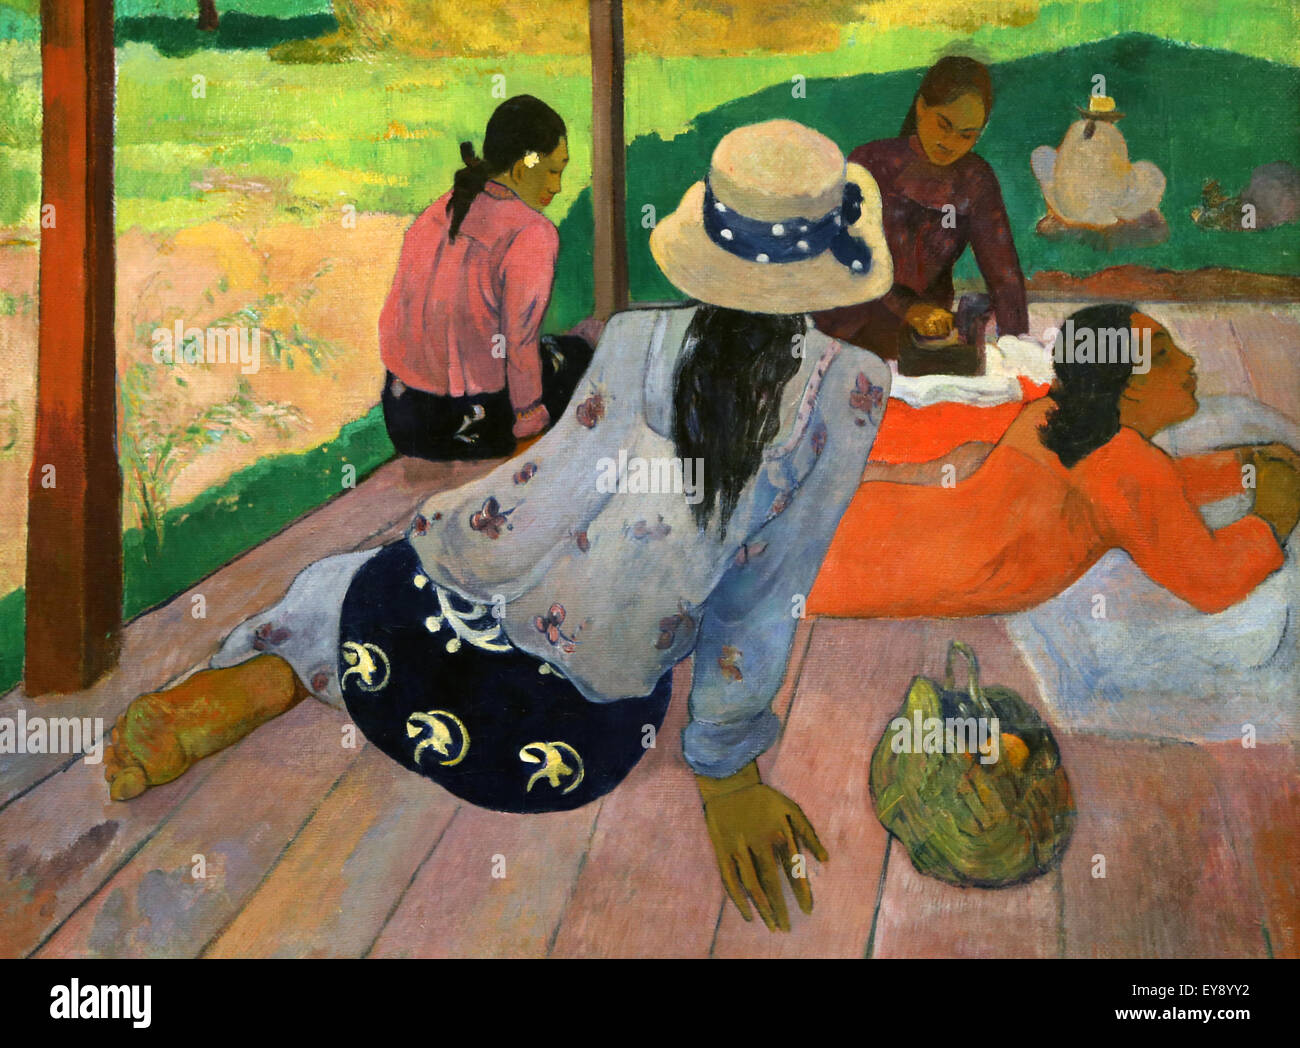 Paul Gauguin (1848-1903). Le peintre français. La Siesta. Entre 1892 et 1894. Huile sur toile. Metropolitan Museum of Art de New York. USA. Banque D'Images